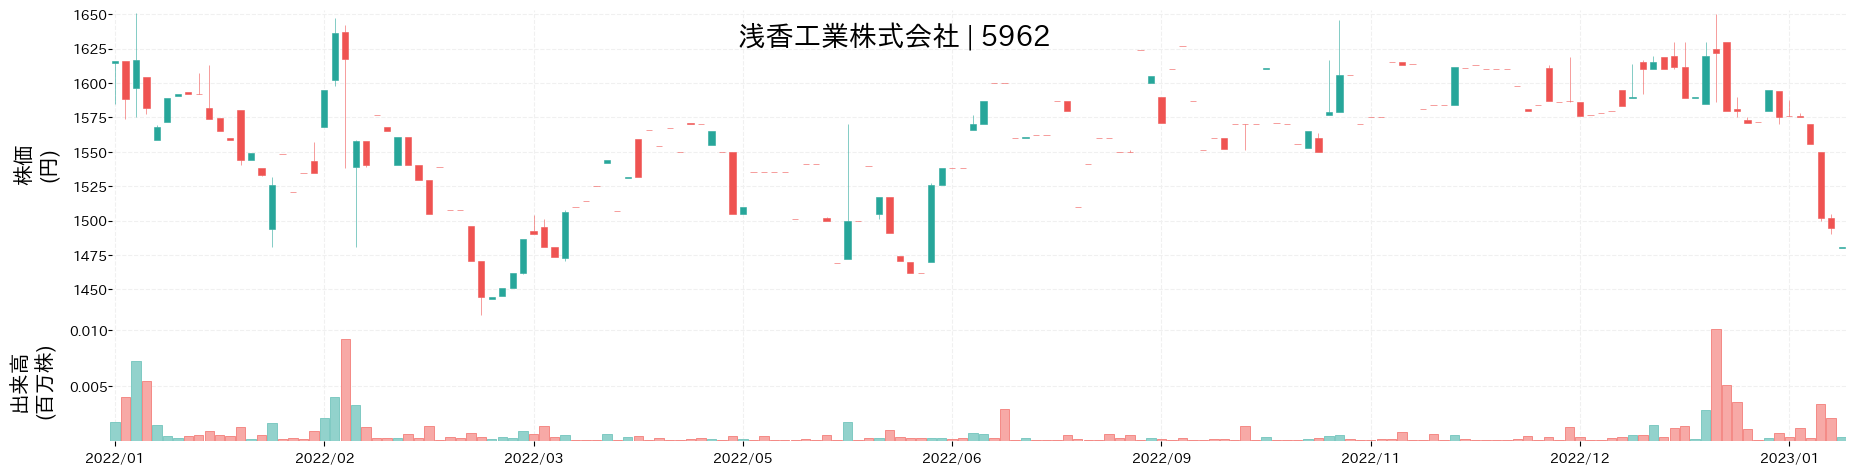 浅香工業の株価推移(2022)